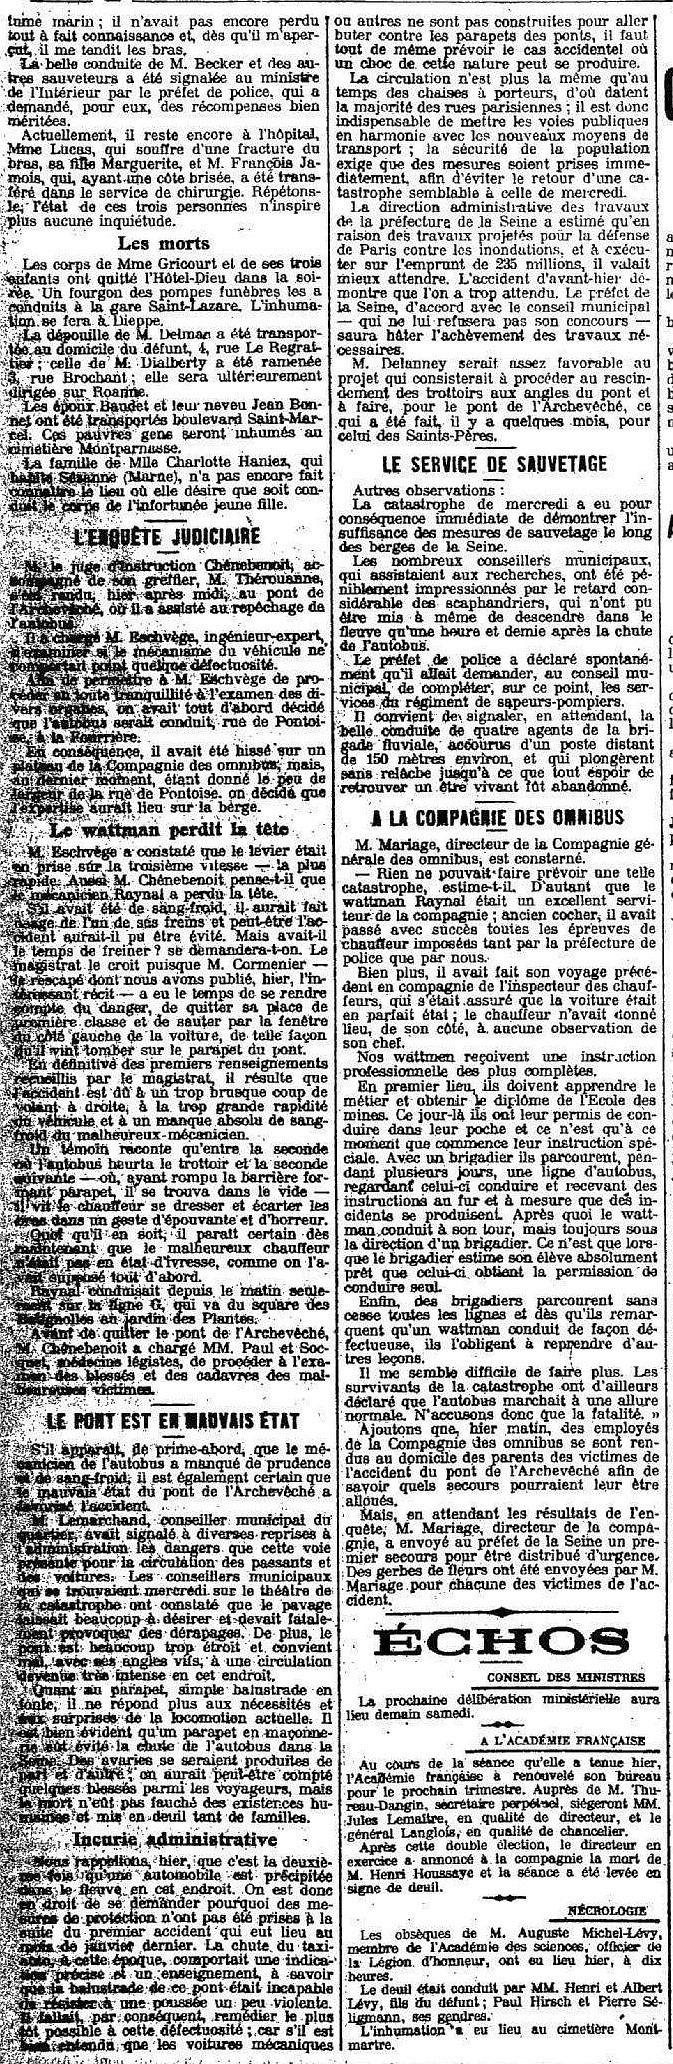 Le Petit Parisien du 29 septembre 1911.